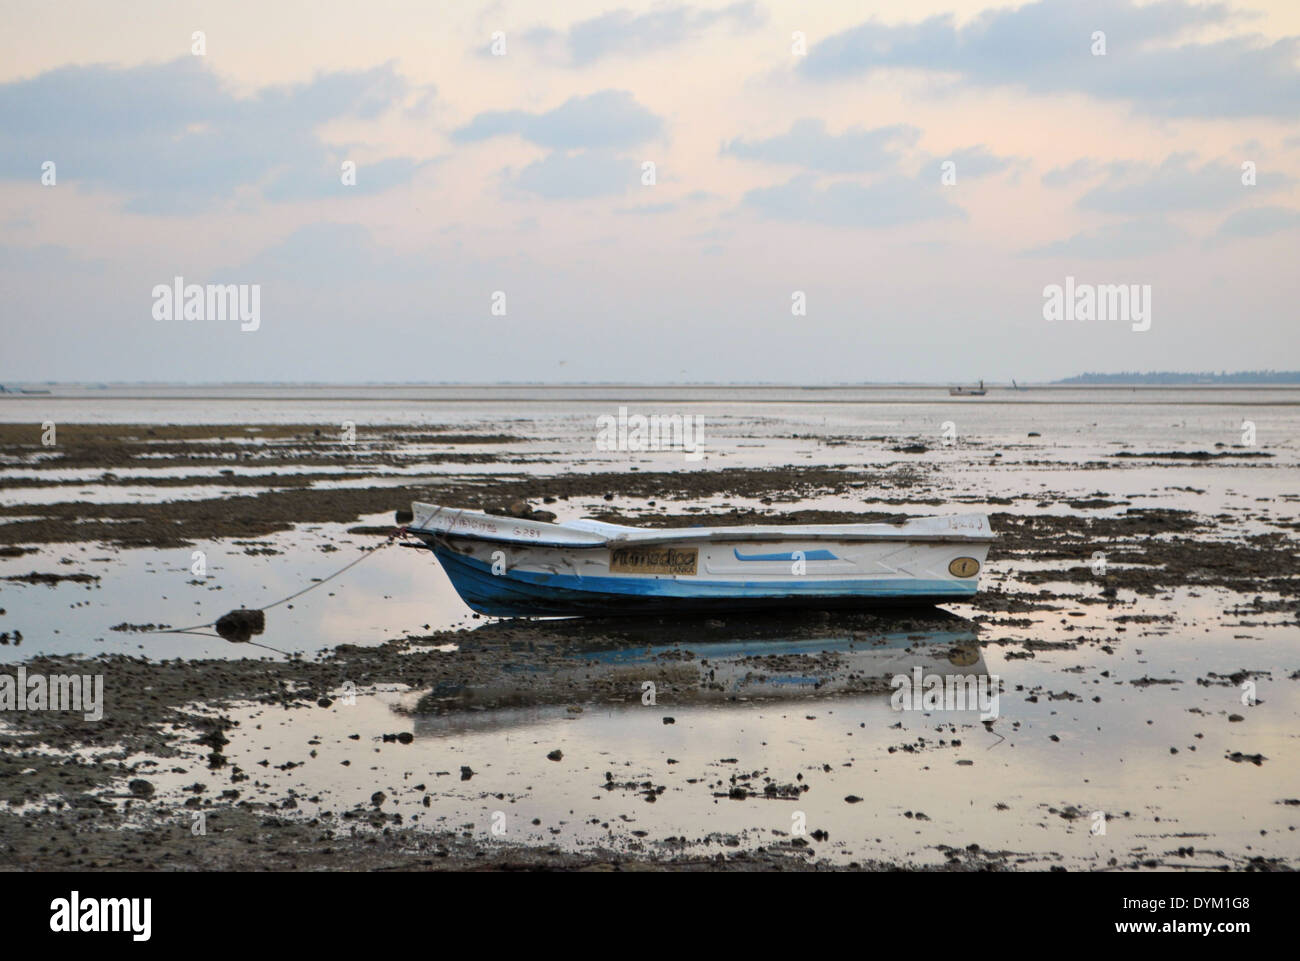 Fishing boat stranded in low tide, Sri Lanka Stock Photo